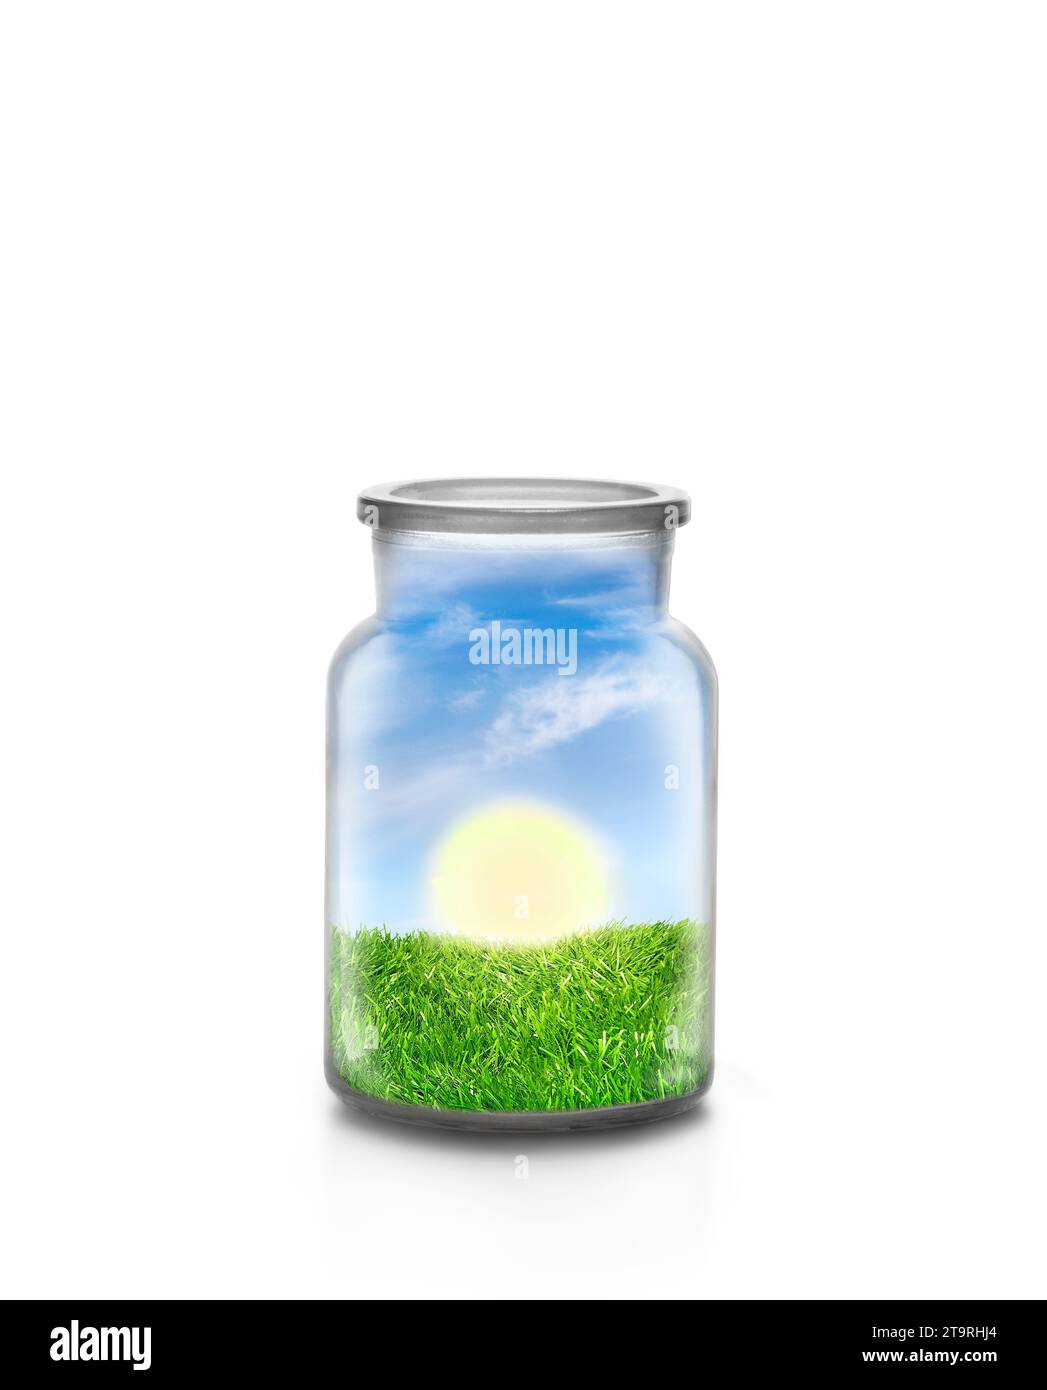 Giornata di sole sul paesaggio dell'erba all'interno di una bottiglia chimica su sfondo bianco. Concetto ecologico e sostenibile. Foto Stock